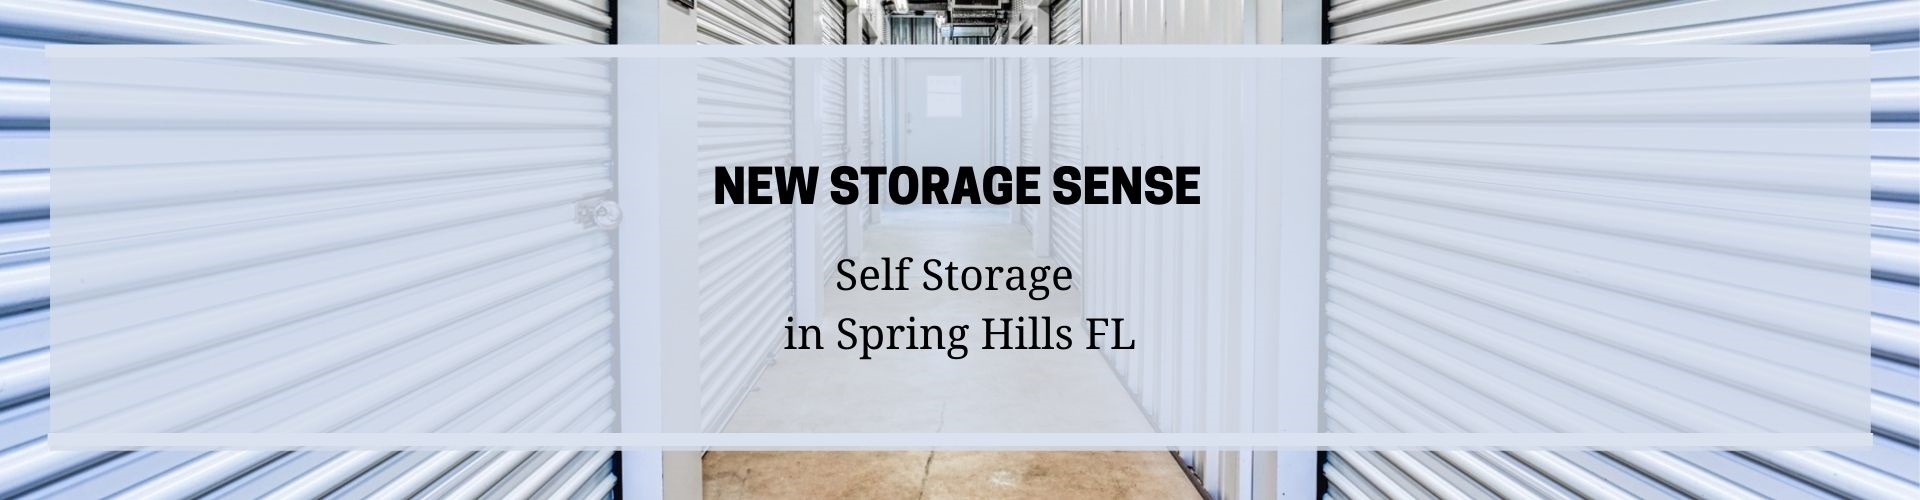 Self Storage Spring Hills FL